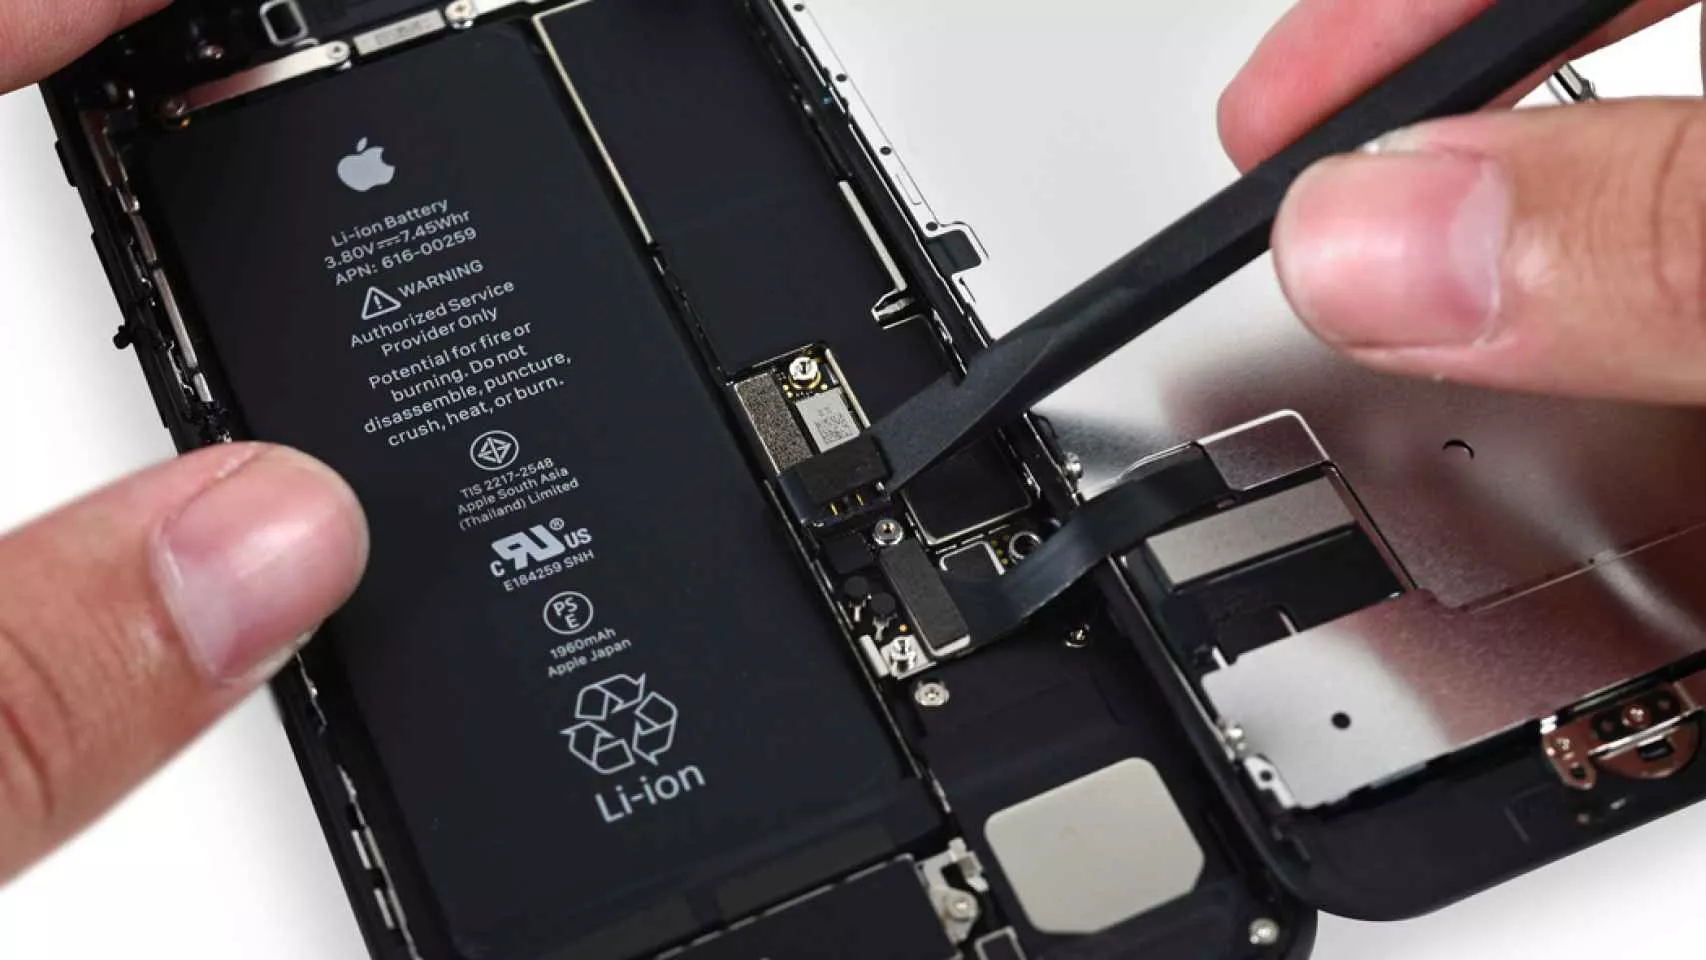 El programa de reparaciones de Apple recibe nuevas críticas por monopolización